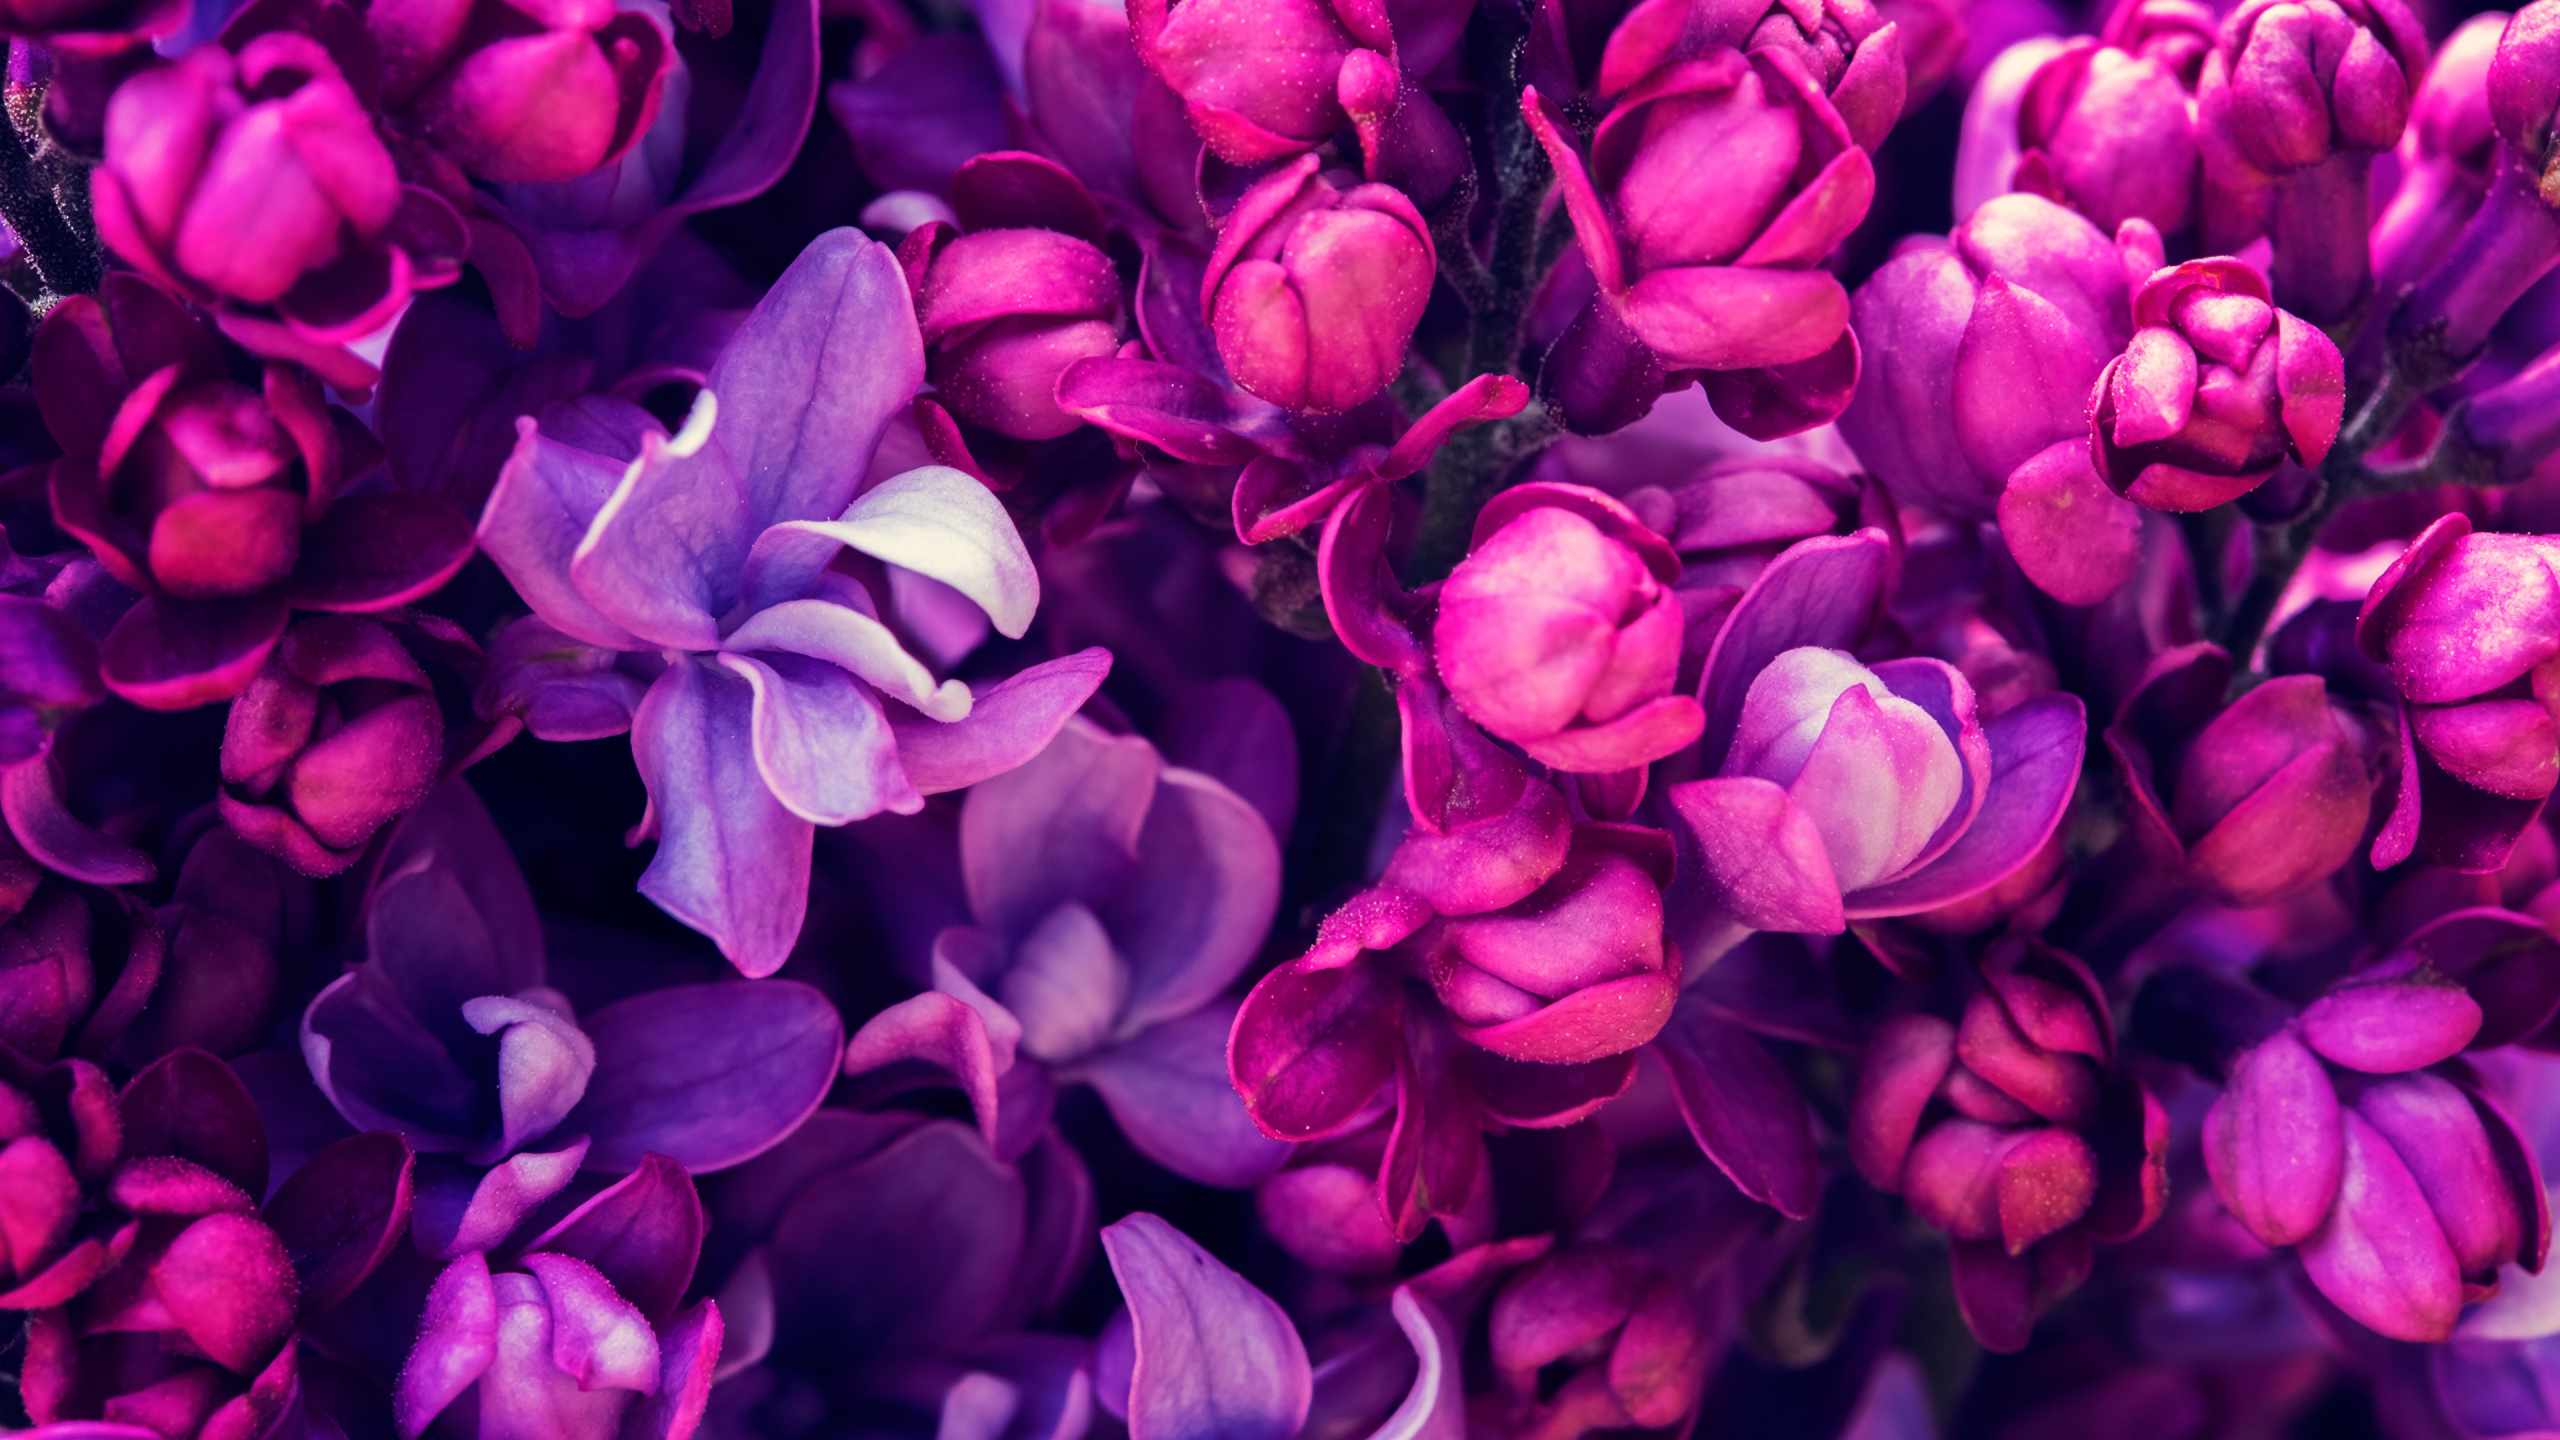 Purple Flowers in Macro Shot. Wallpaper in 2560x1440 Resolution